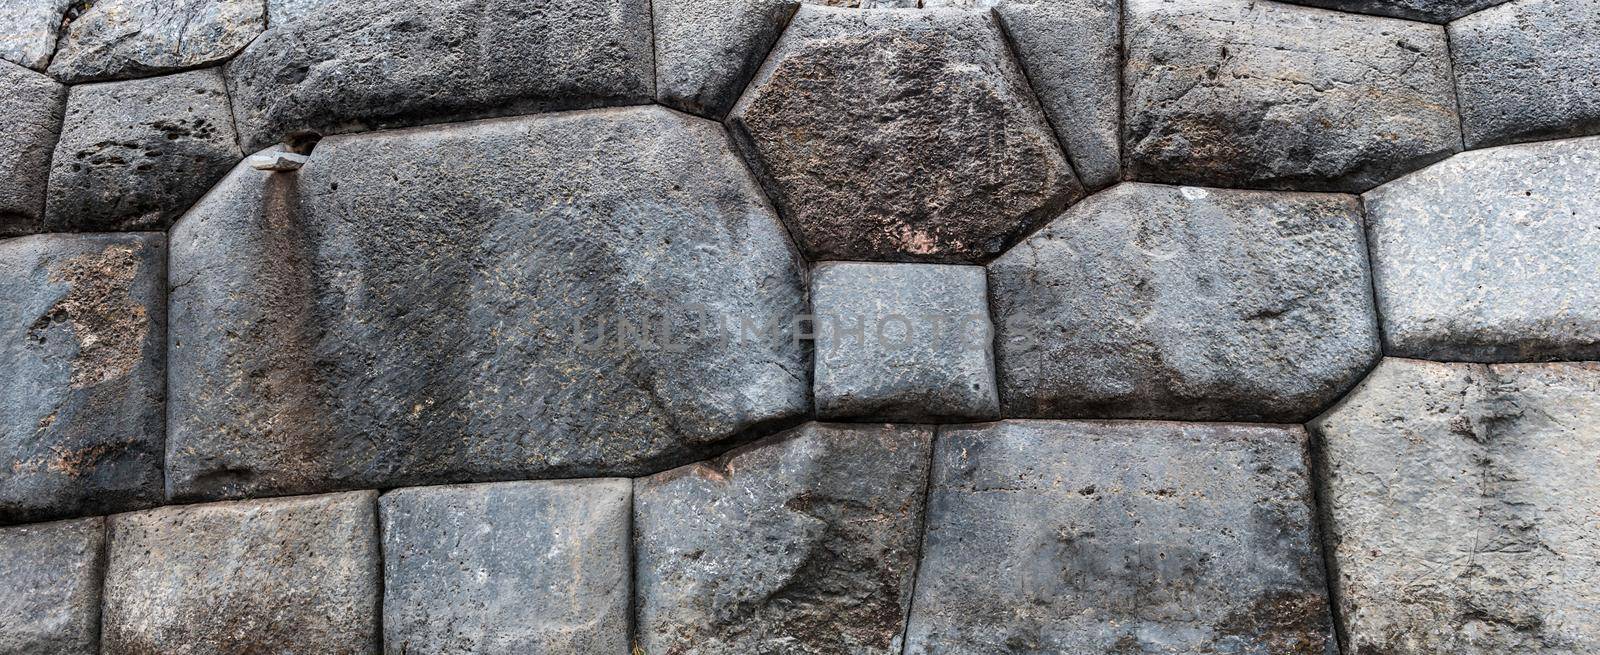 Bricks of stone walls of Saksaywaman by tan4ikk1